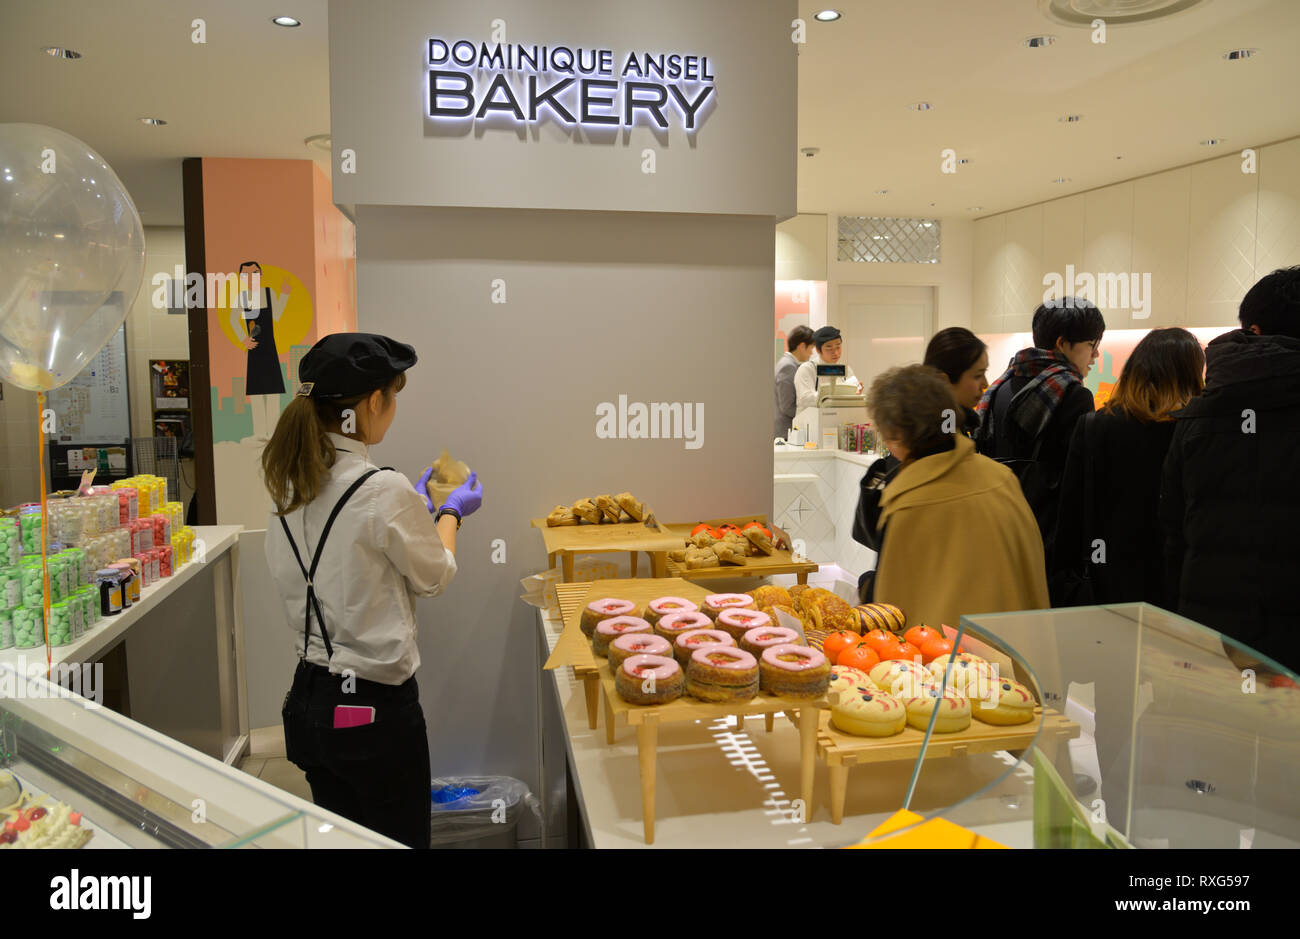 La Dominique Ansel Bakery outlet dans le magasin Mitsukoshi à Ginza, Tokyo JP Banque D'Images